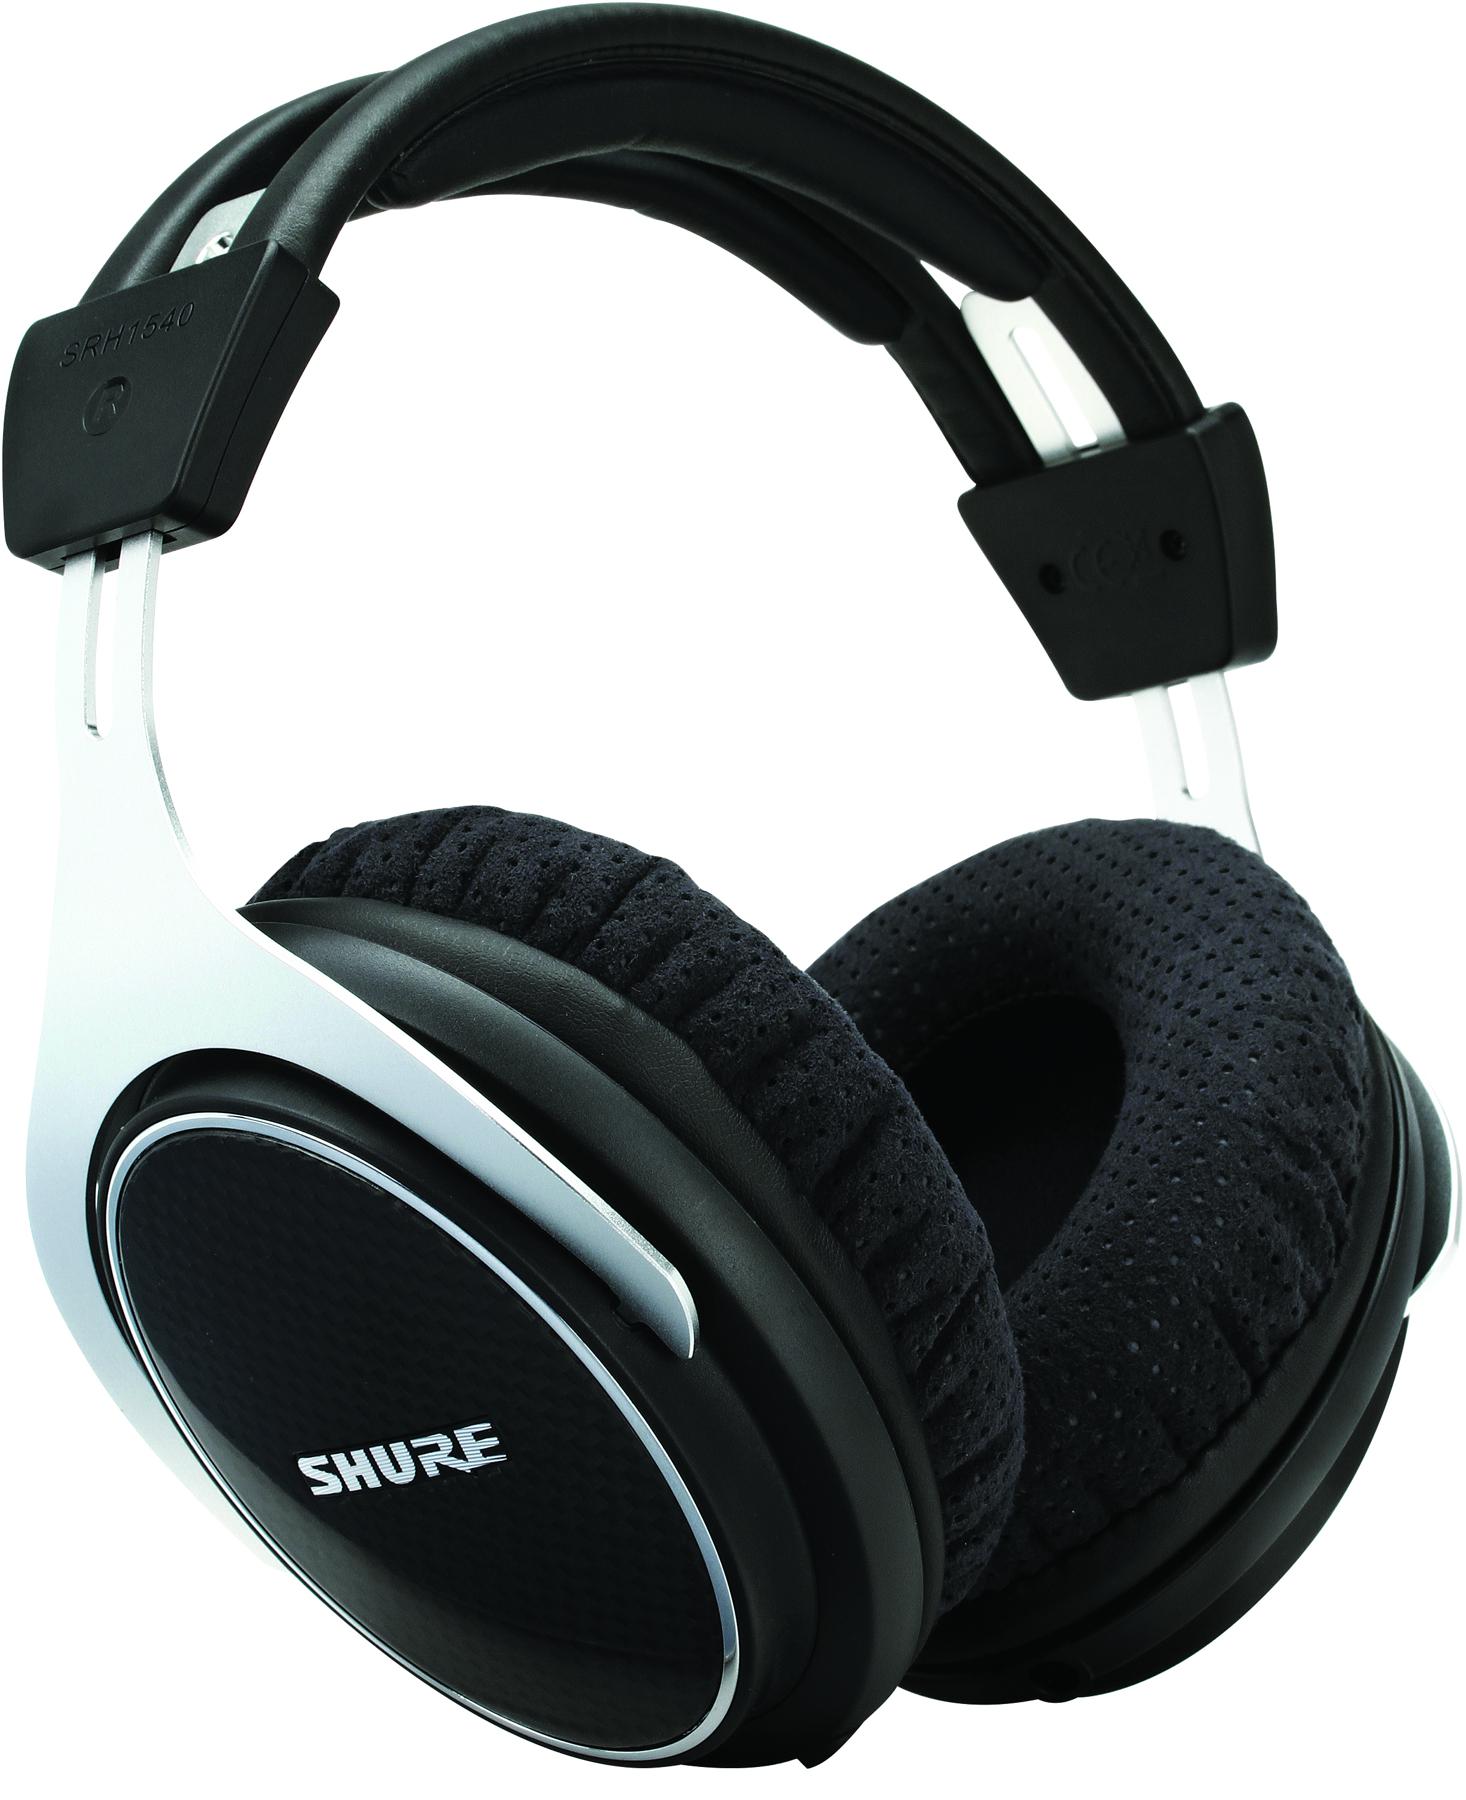 Shure SRH1540 Premium Closed-Back Recording Headphones